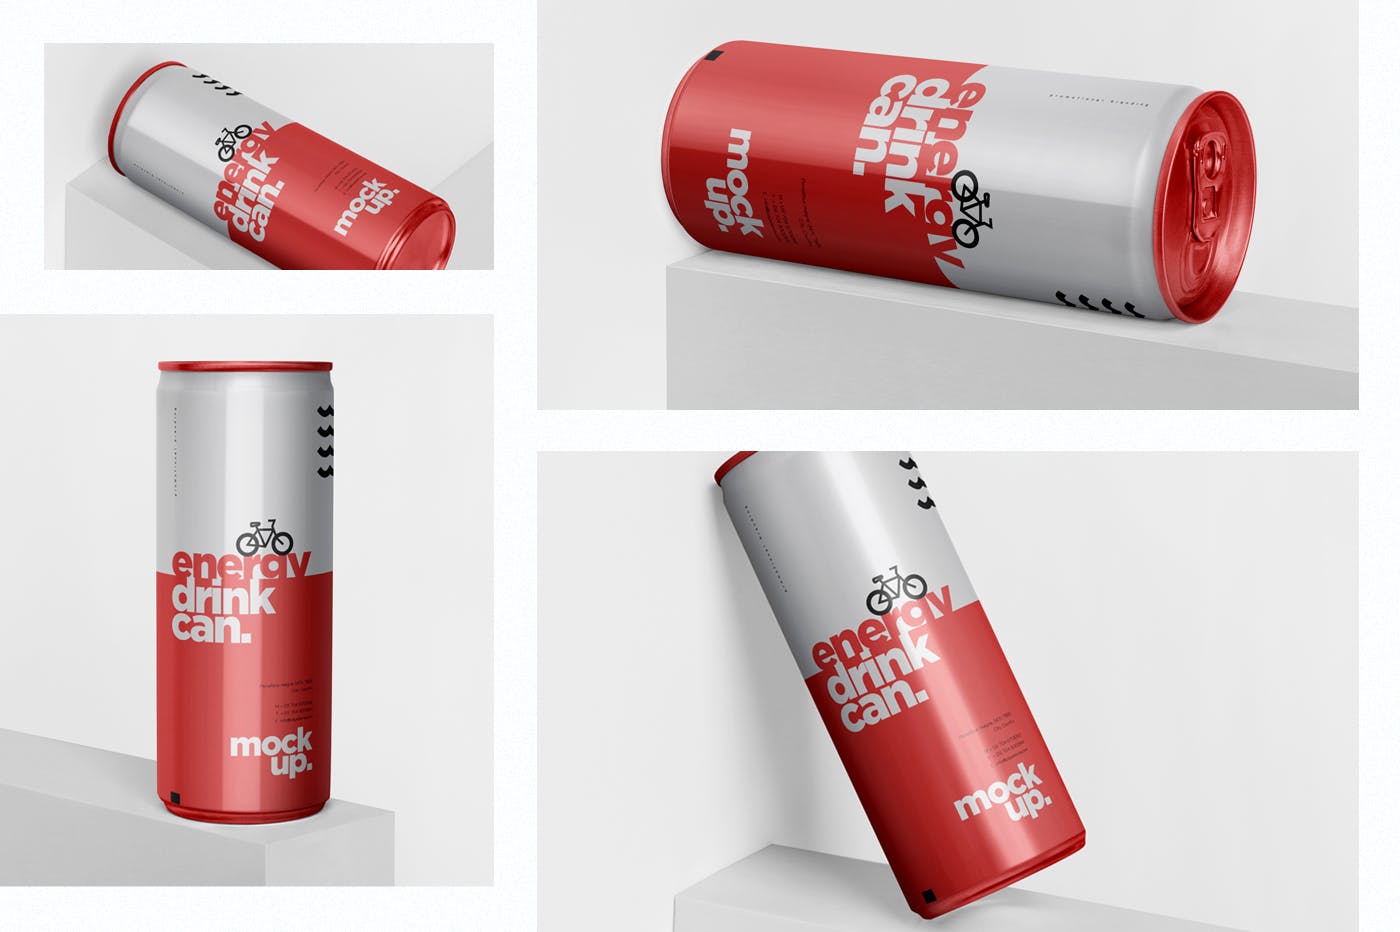 能量饮料易拉罐罐头外观设计蚂蚁素材精选模板 Energy Drink Can Mock-Up – 250 ml插图(1)